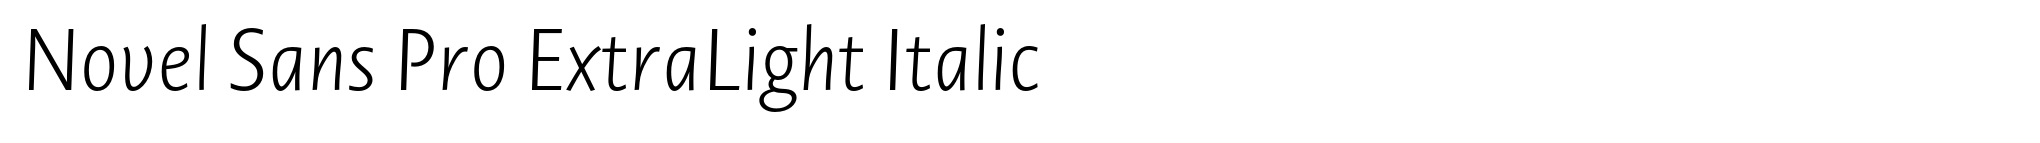 Novel Sans Pro ExtraLight Italic image